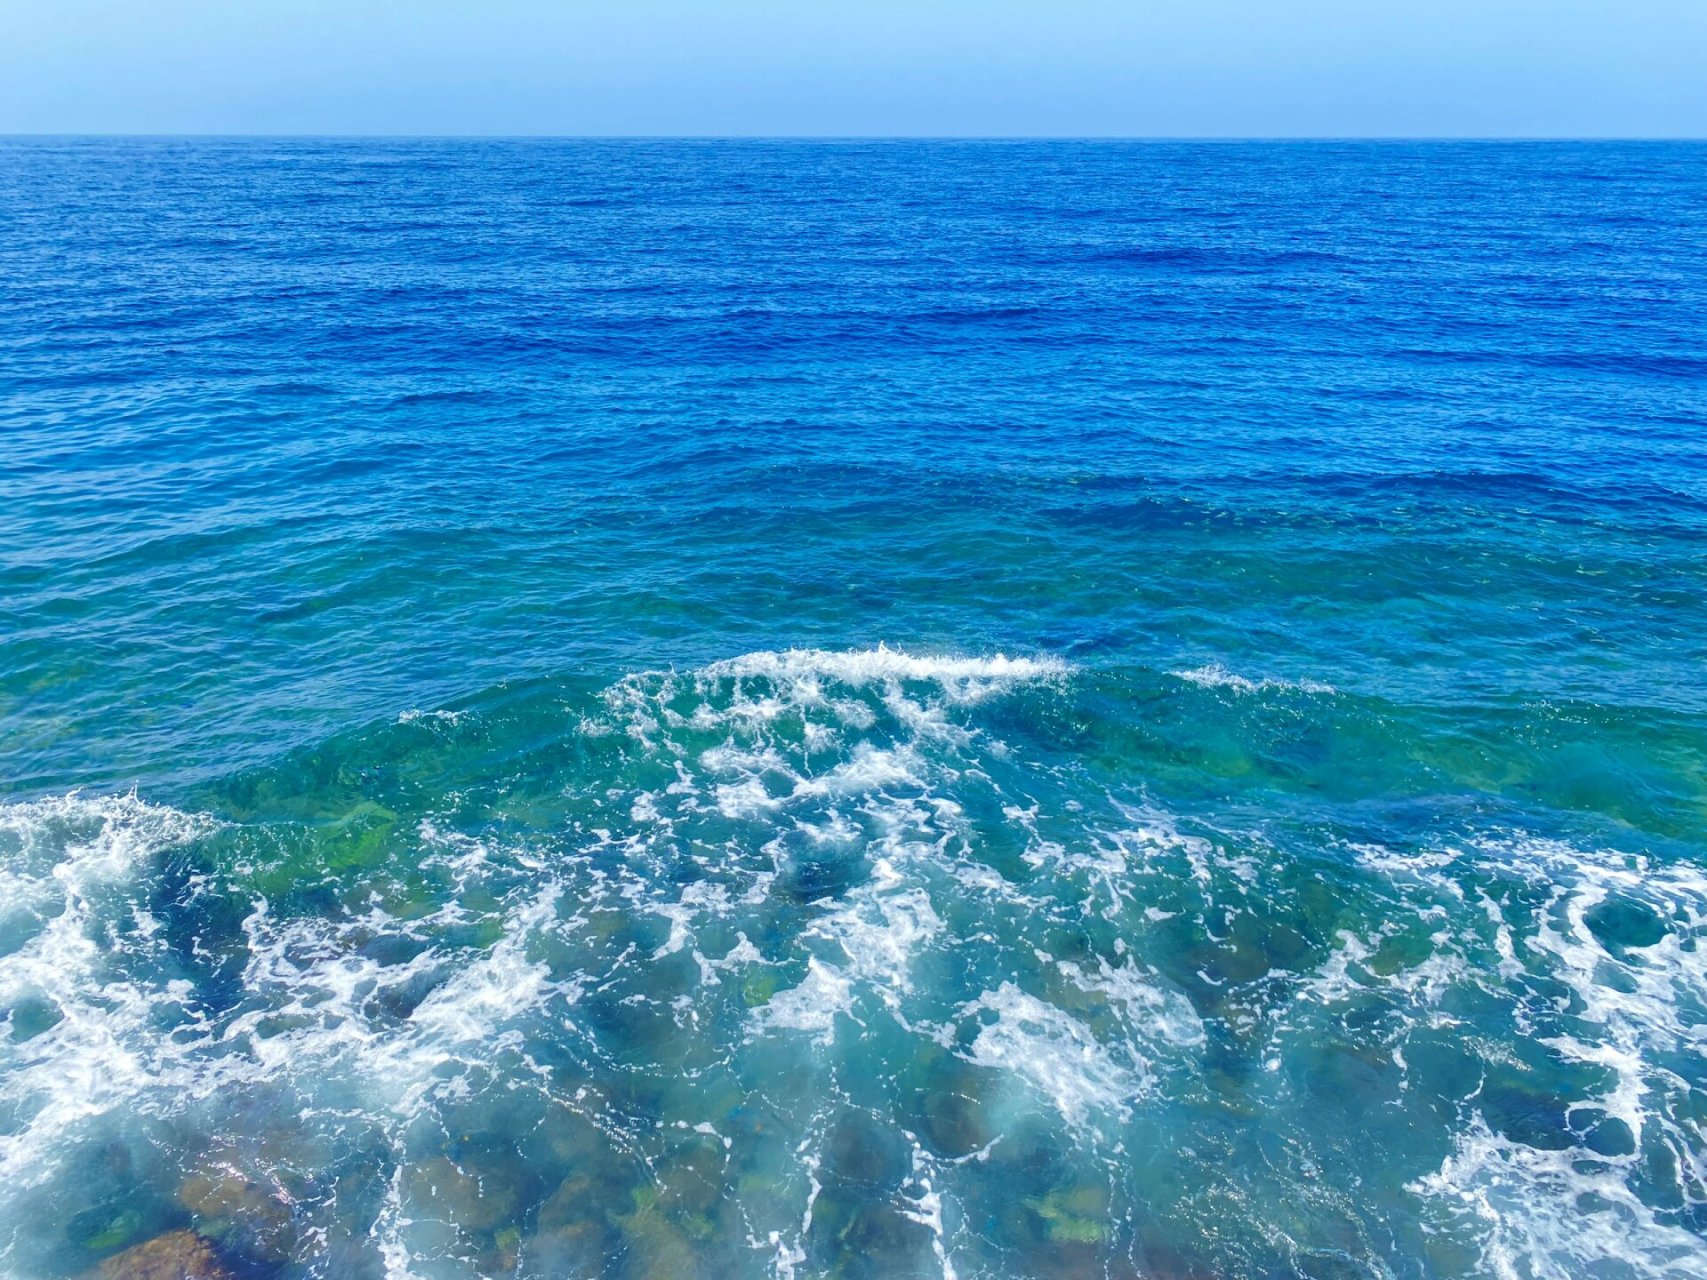 吉达的海是真好看 又蓝又绿 水还特别清澈 看见大海就走不动道